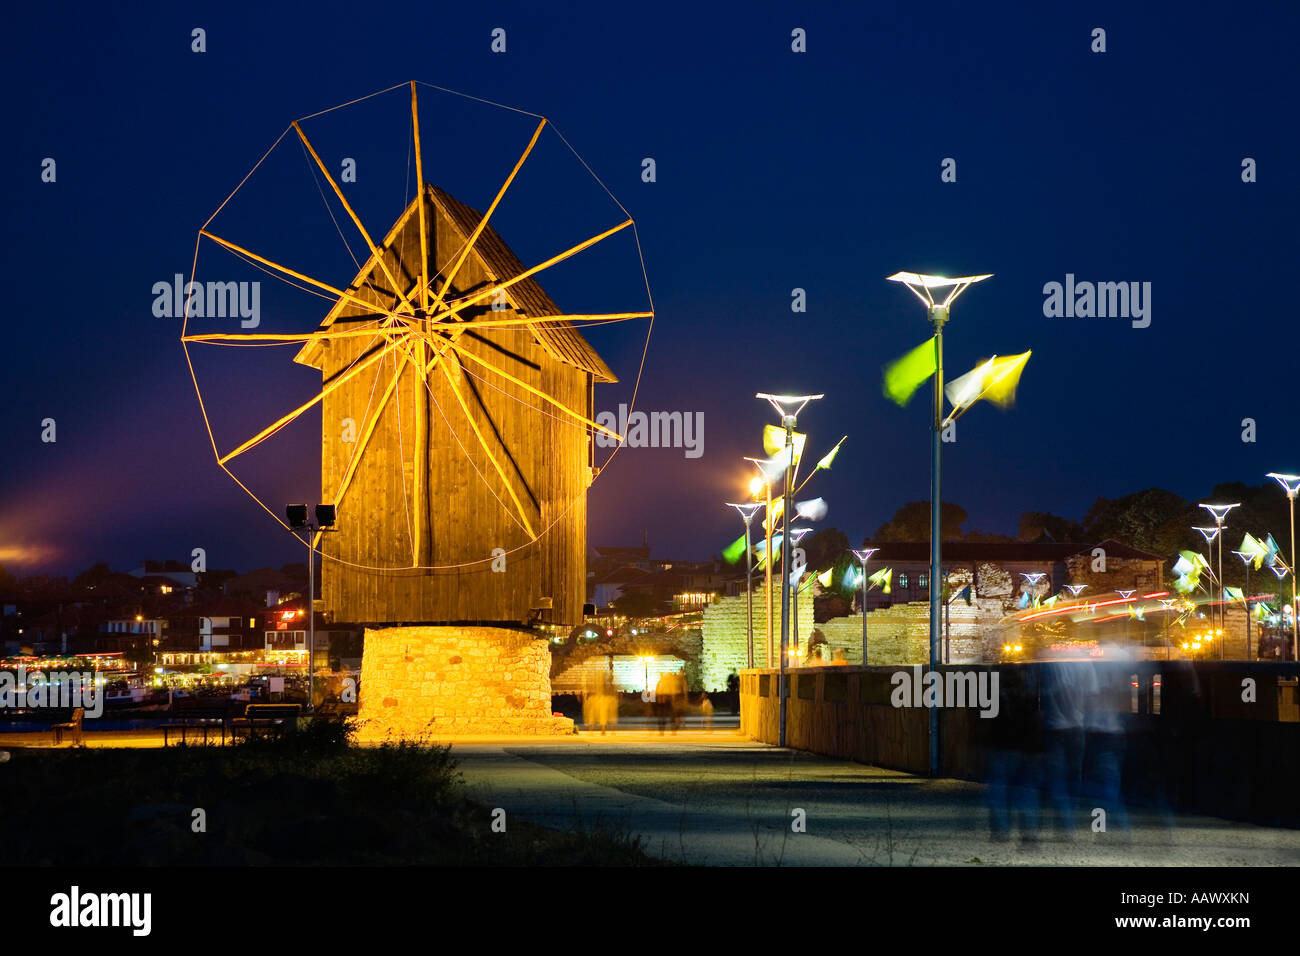 Windmühle von Nessebar, Schwarzes Meer, Bulgarien Stockfoto